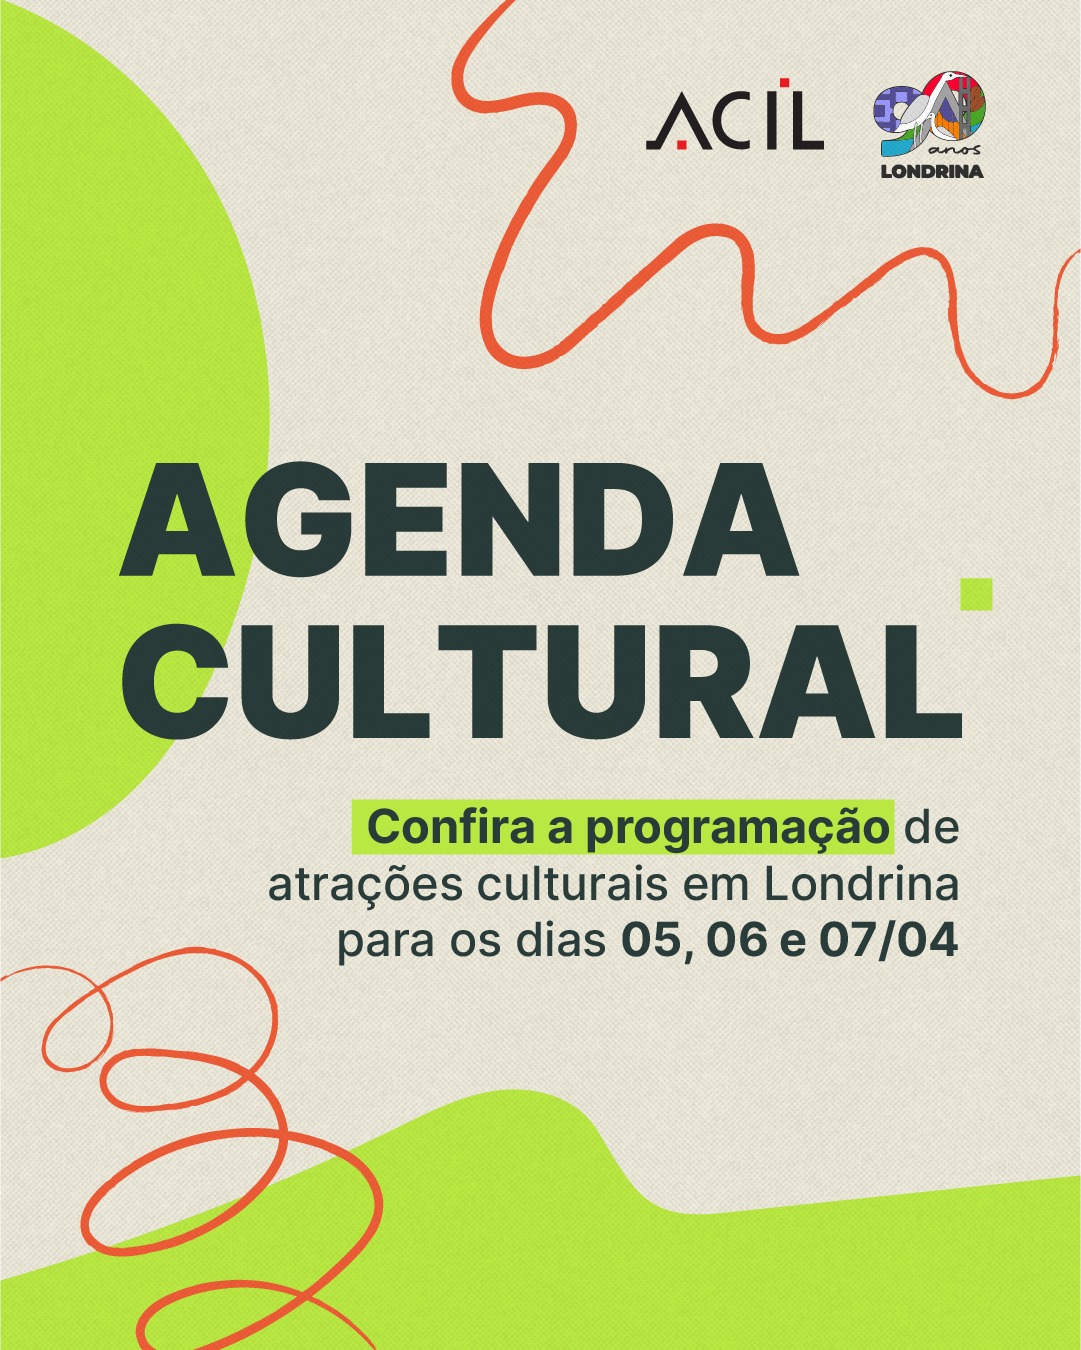 Confira a programação de atrações para o 1º fim de semana de abril em Londrina